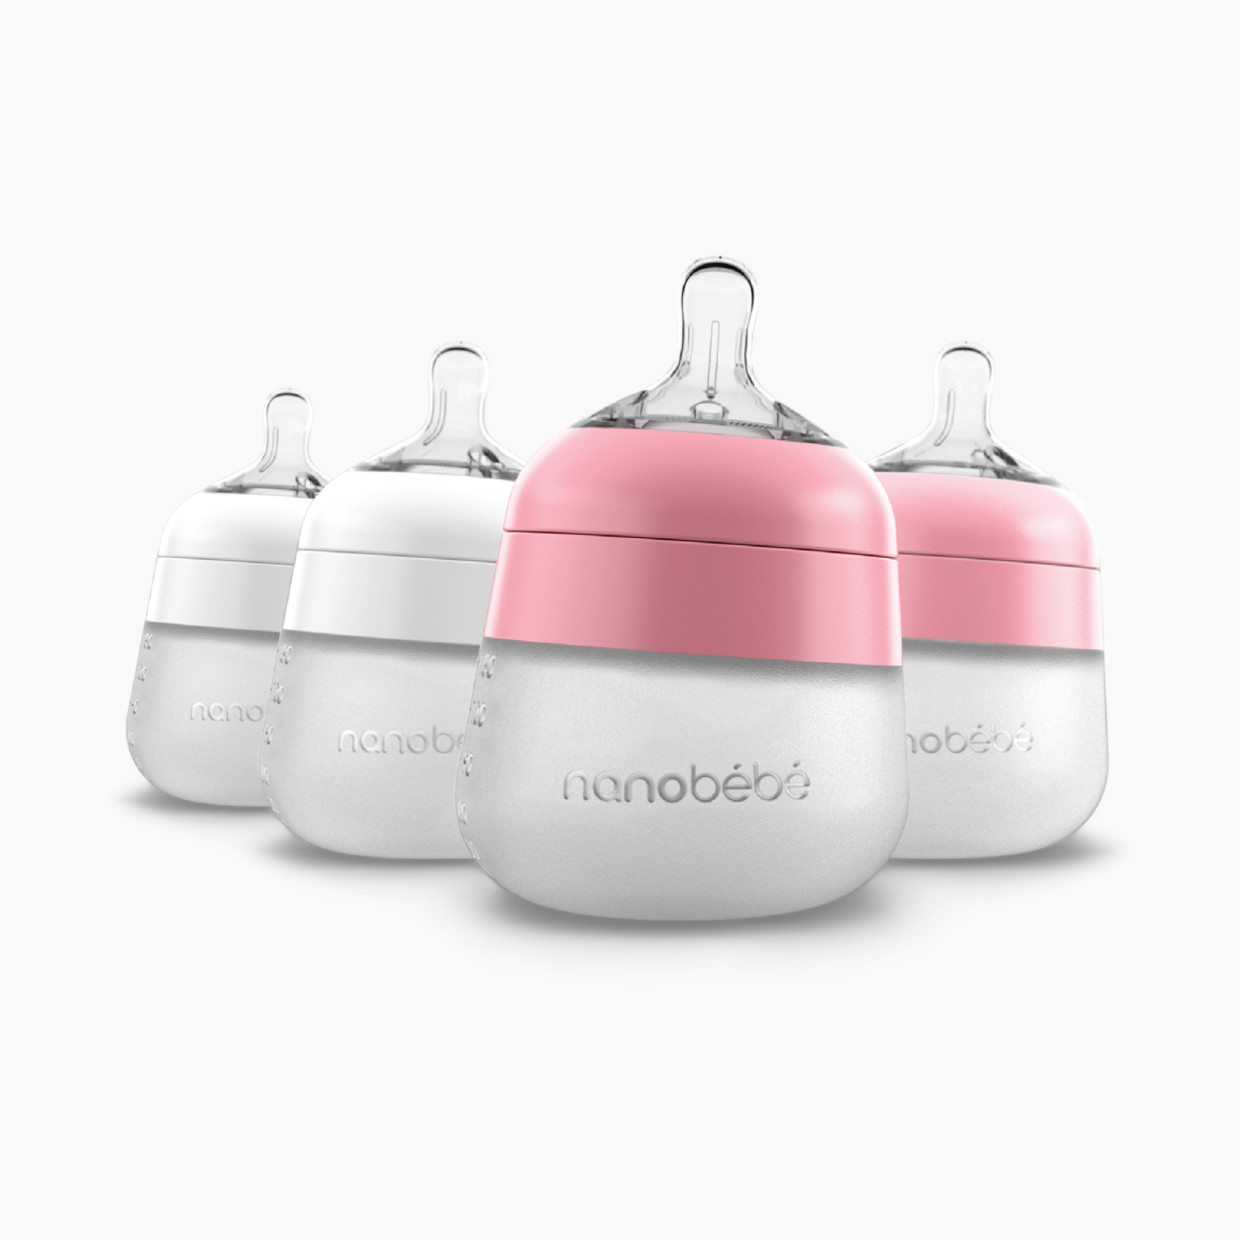 Nanobebe Flexy Silicone Baby Bottle - Pink & White, 5 Oz, 4.